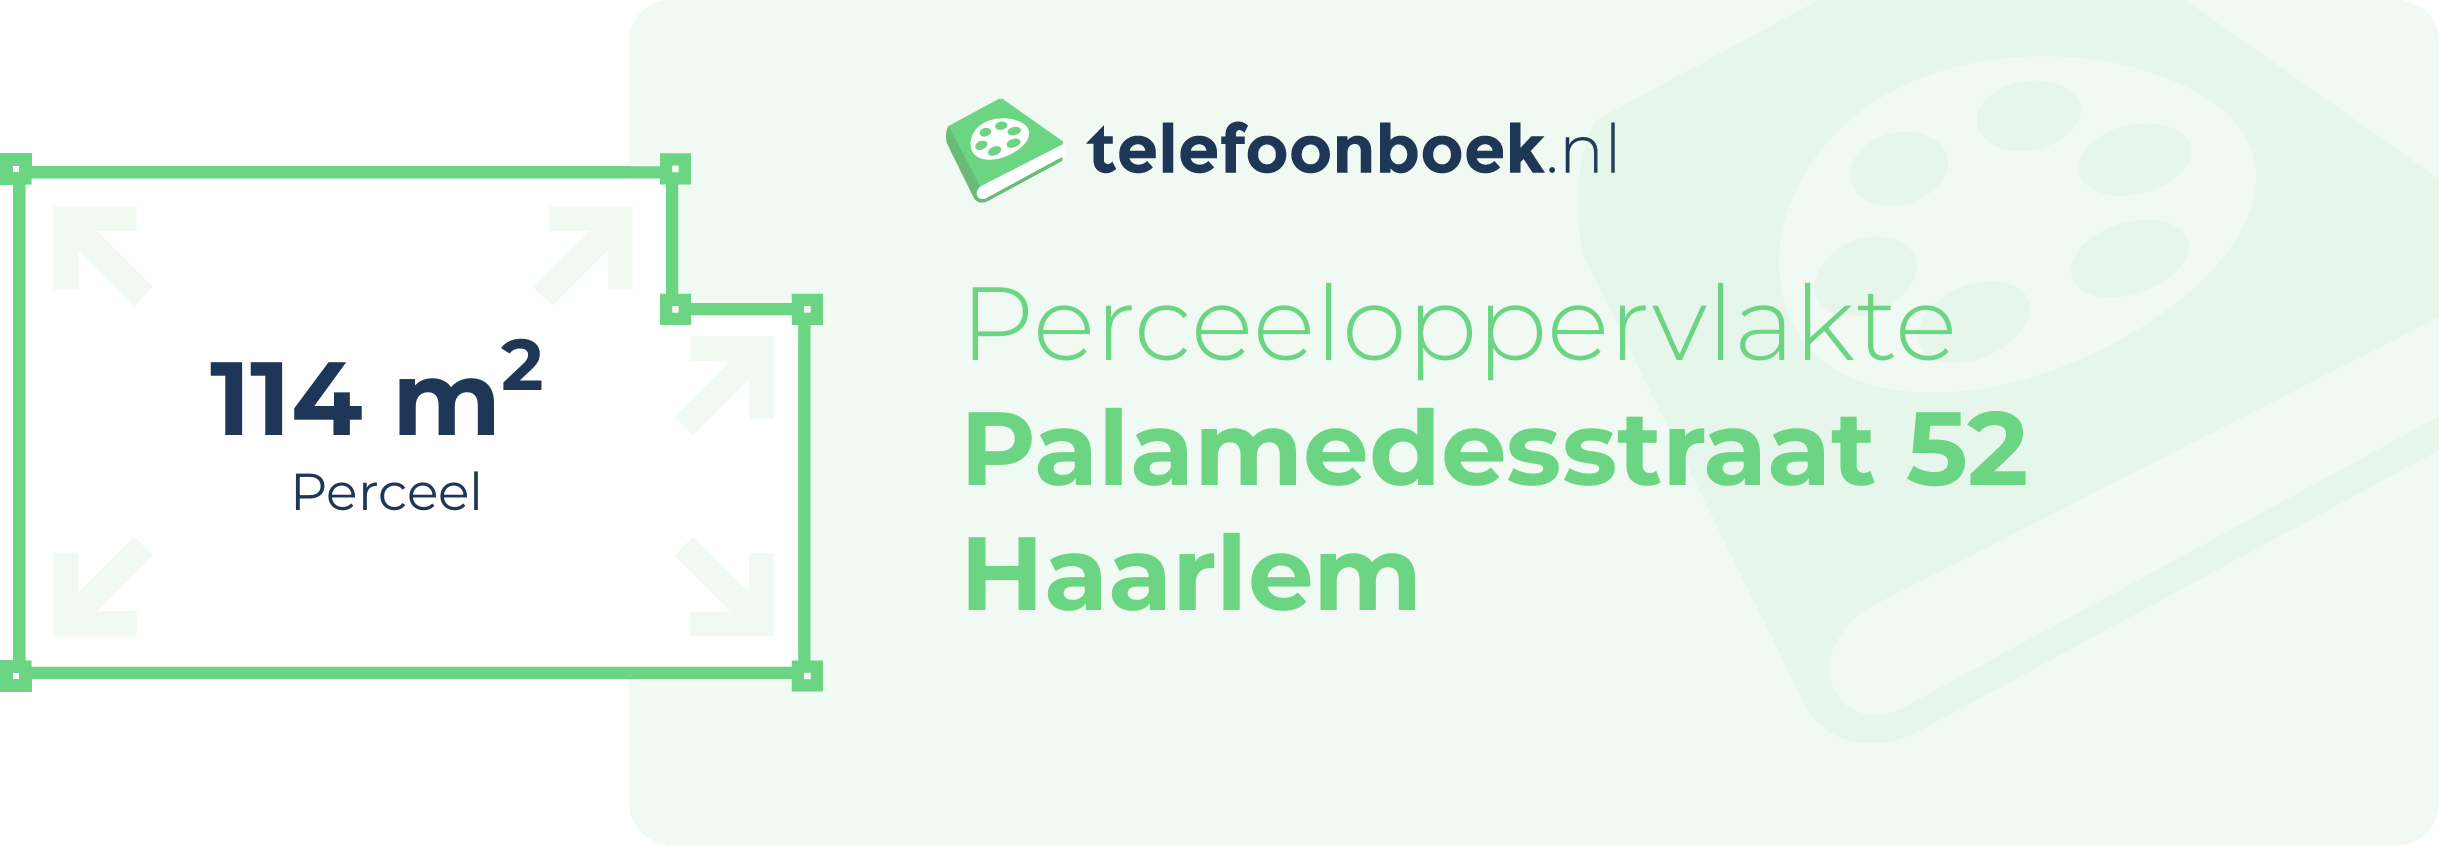 Perceeloppervlakte Palamedesstraat 52 Haarlem